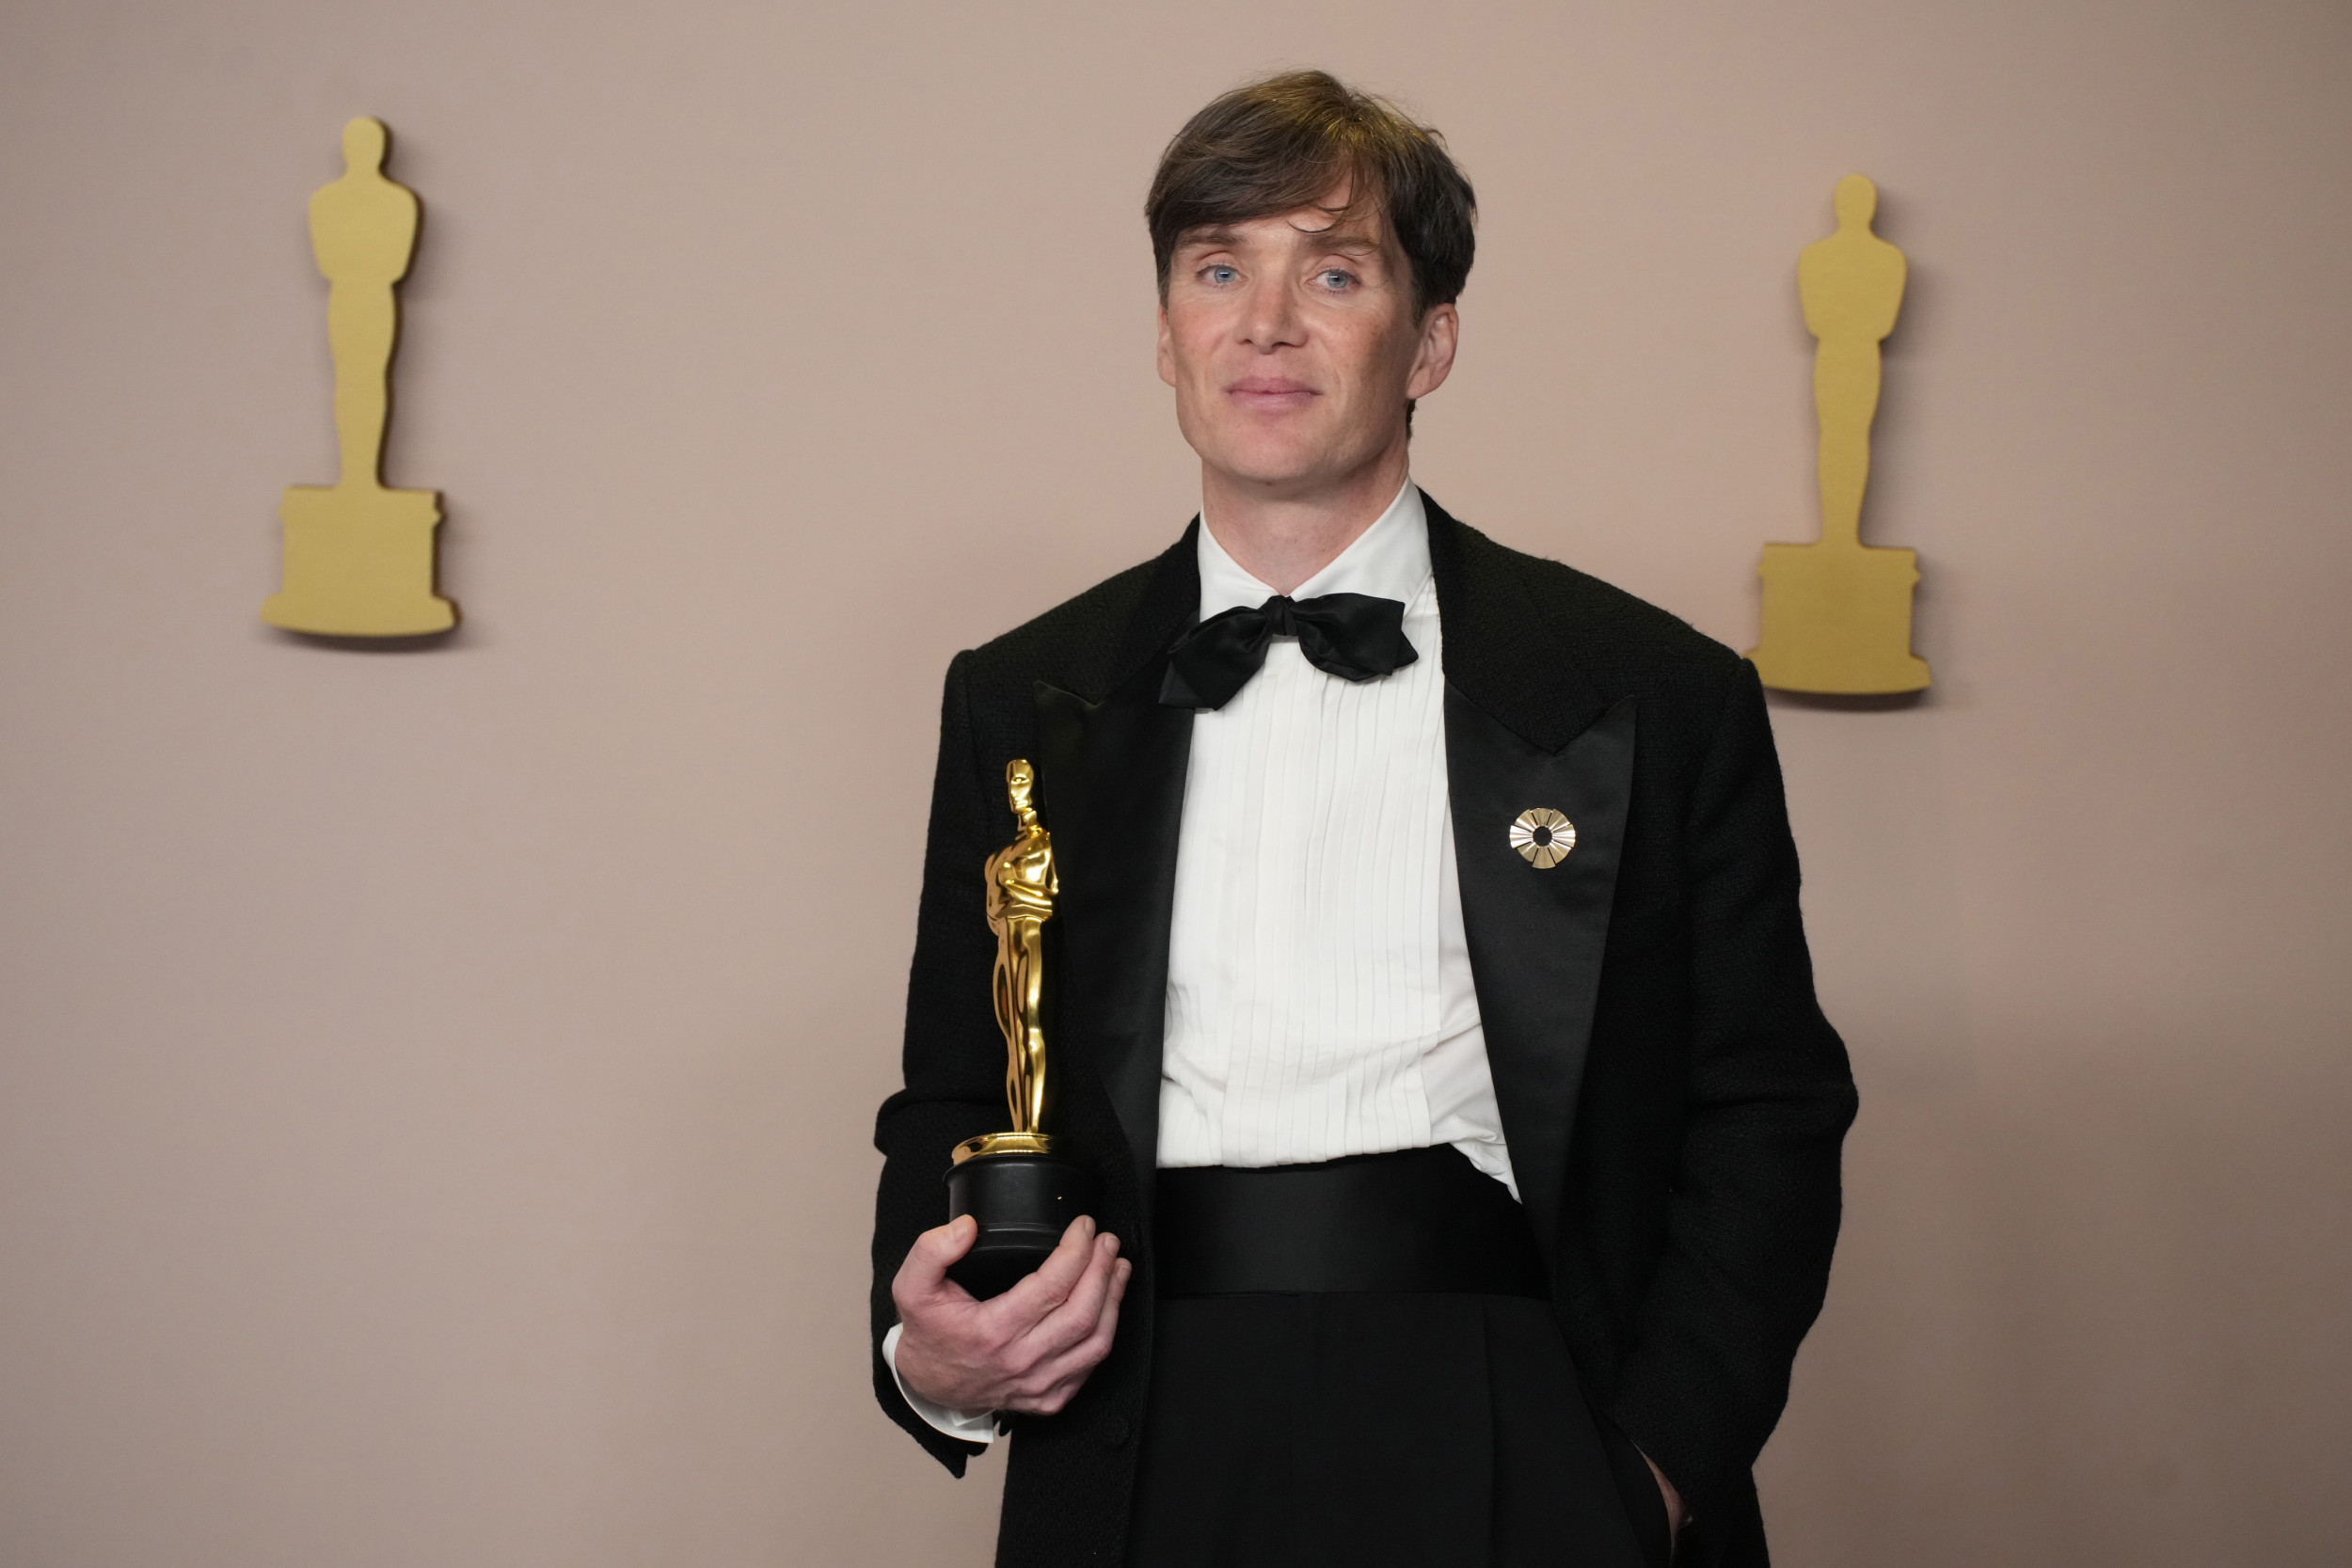 L’ancienne école de Cillian Murphy célèbre sa victoire aux Oscars